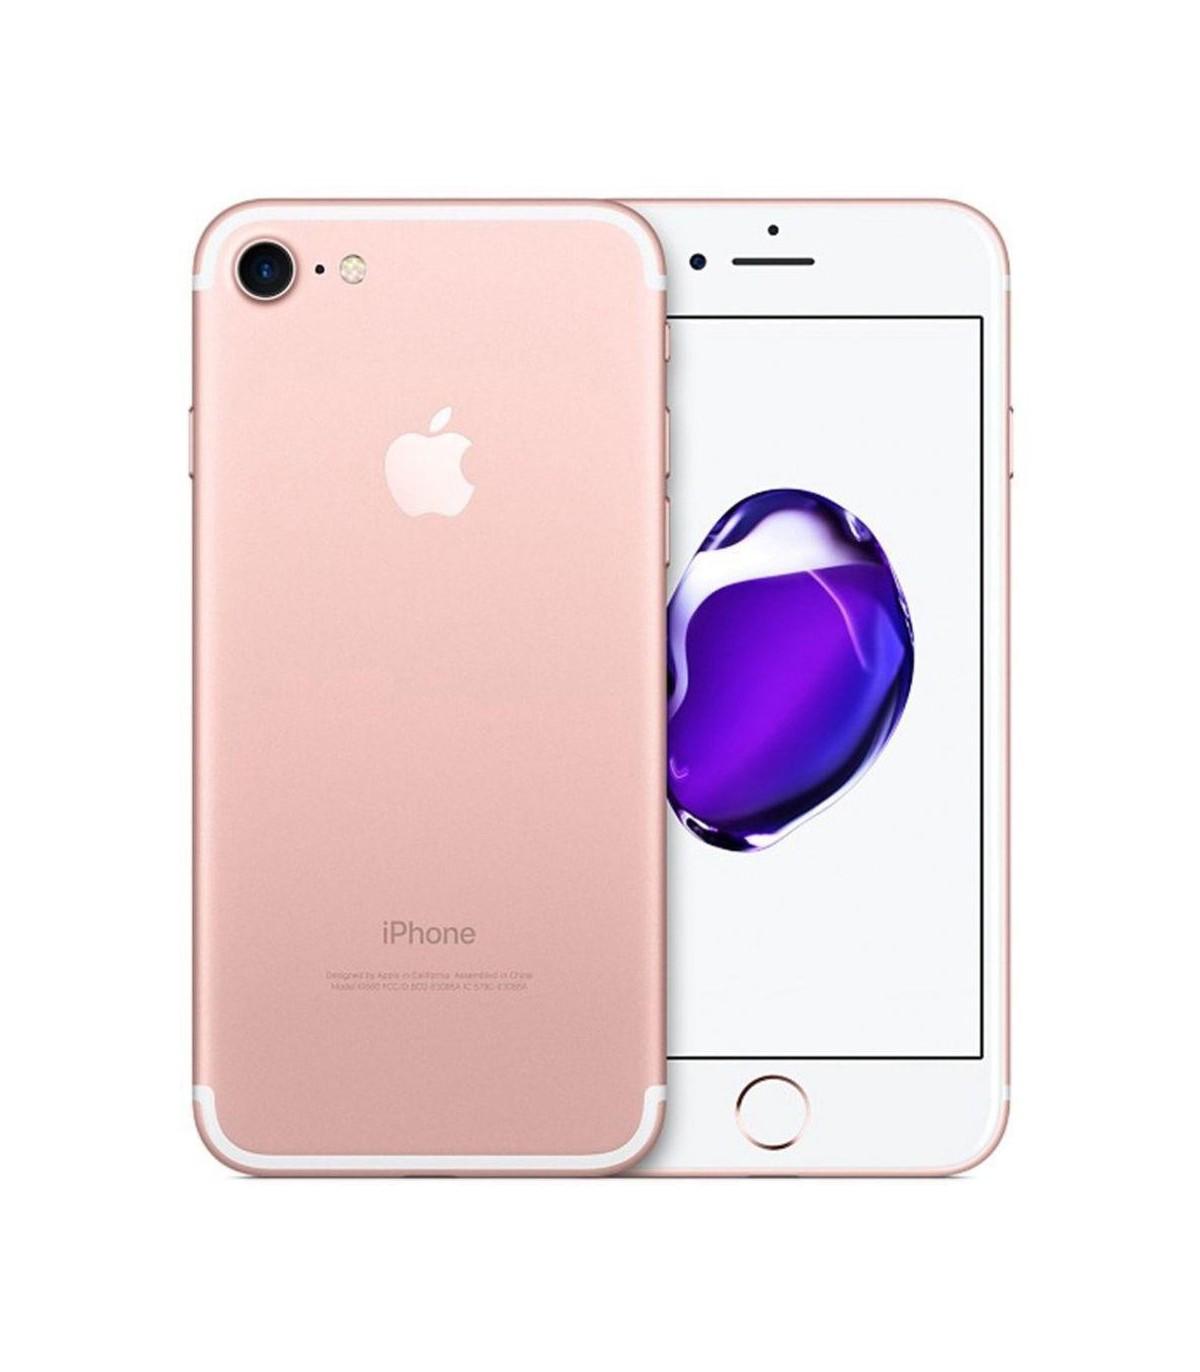 Apple iPhone 7 32 Go - Rose - Débloqué - Occasion reconditionné 